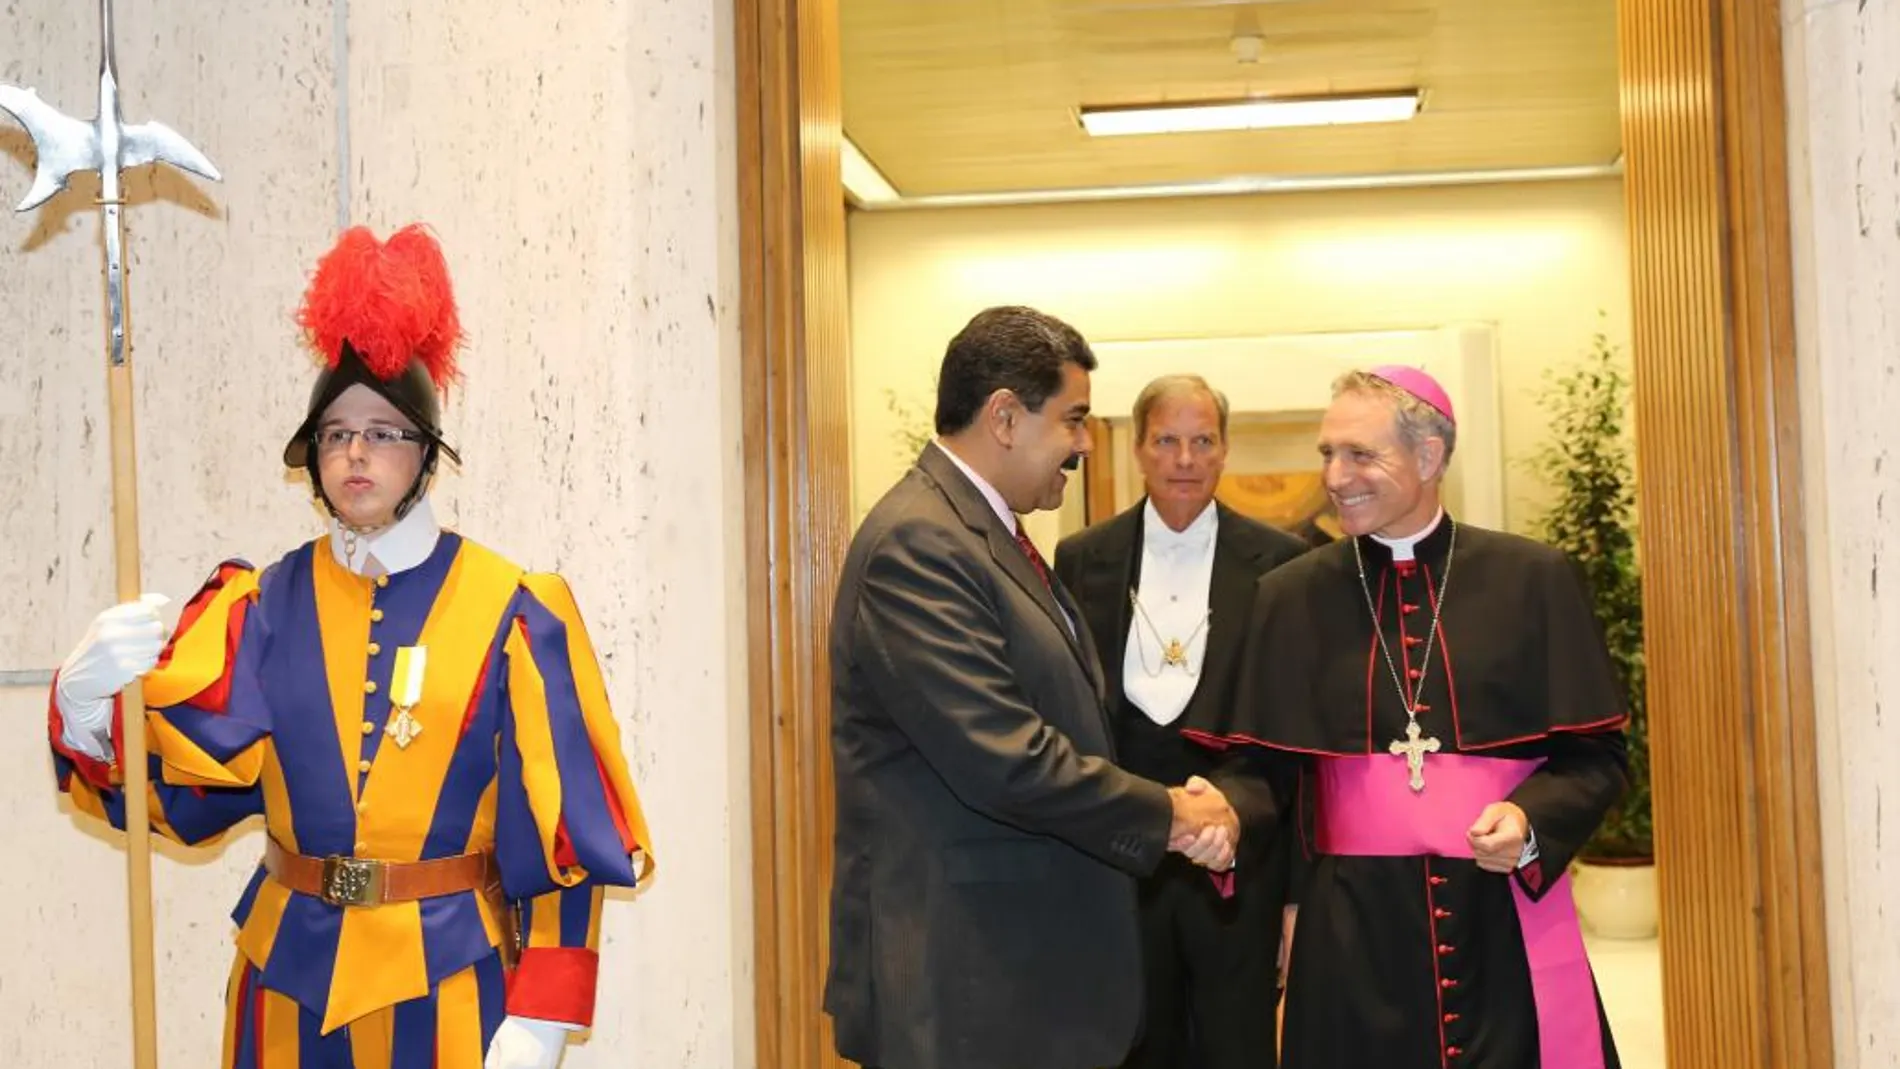 El presidente de Venezuela, Nicolás Maduro (c), es recibido por el presbíterio italiano Guido Marini (d), maestro de la Oficina de las Celebraciones Litúrgicas del Sumo Pontífice, hoy, lunes